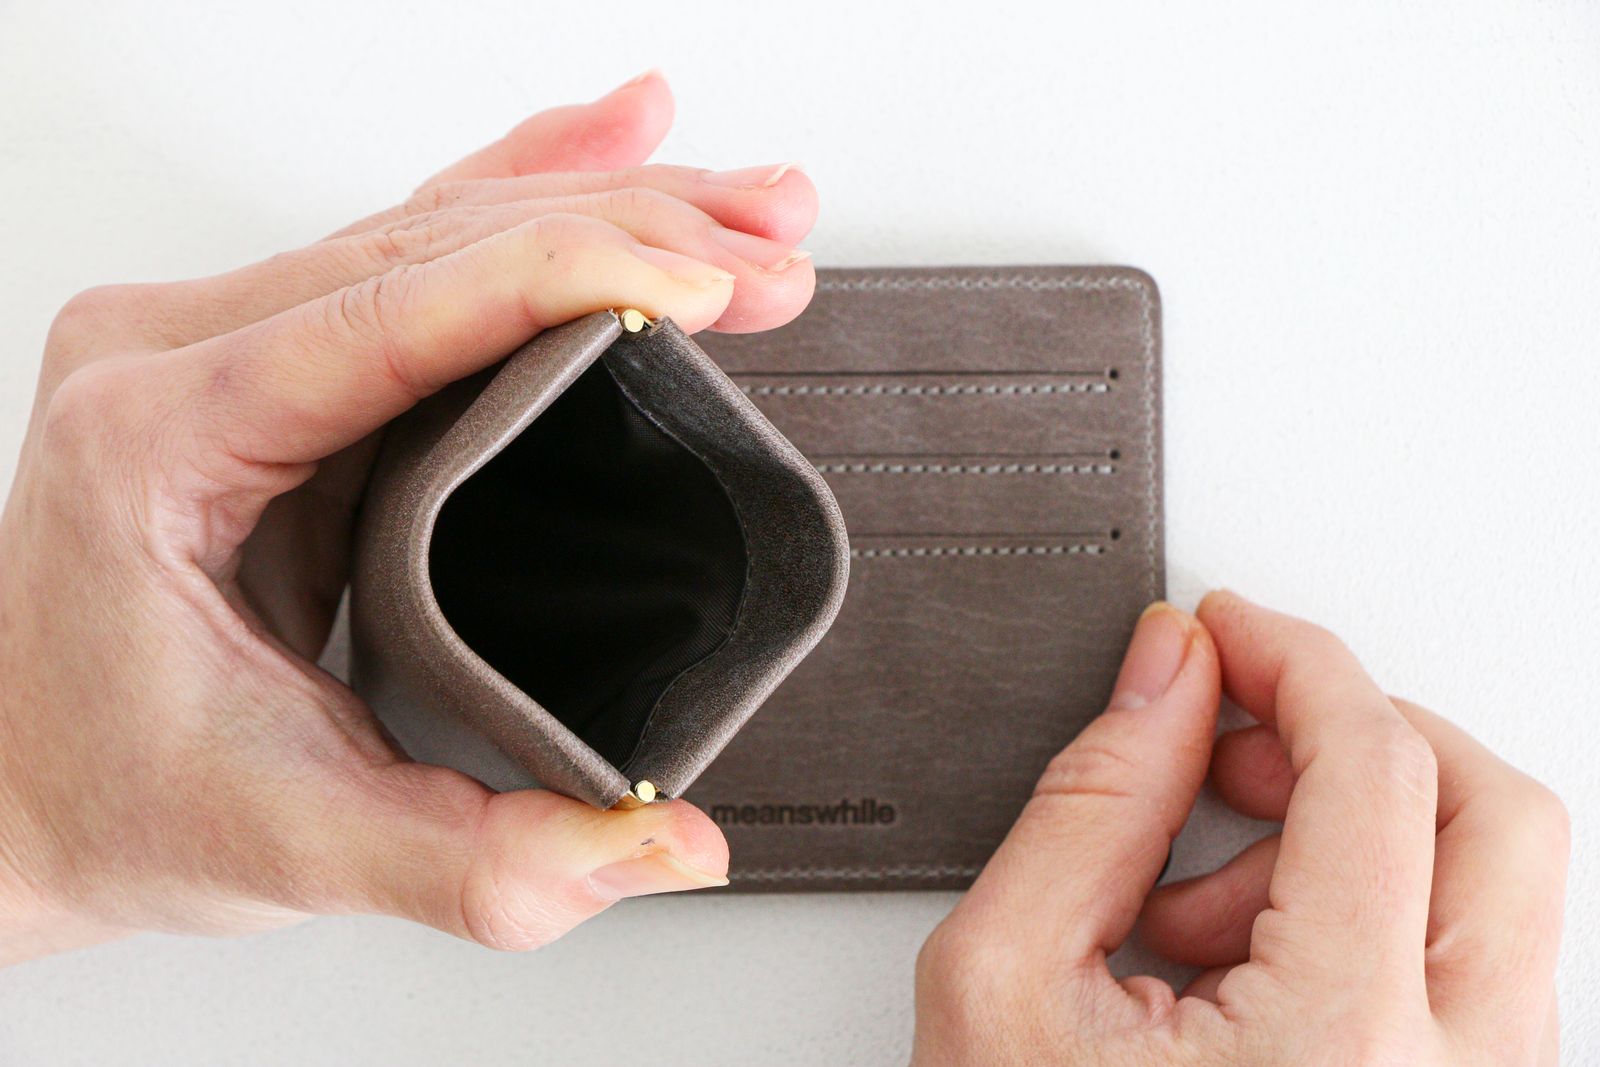 メール便指定可能 meanswhile Wax Leather Minimal Wallet | ccfl.ie